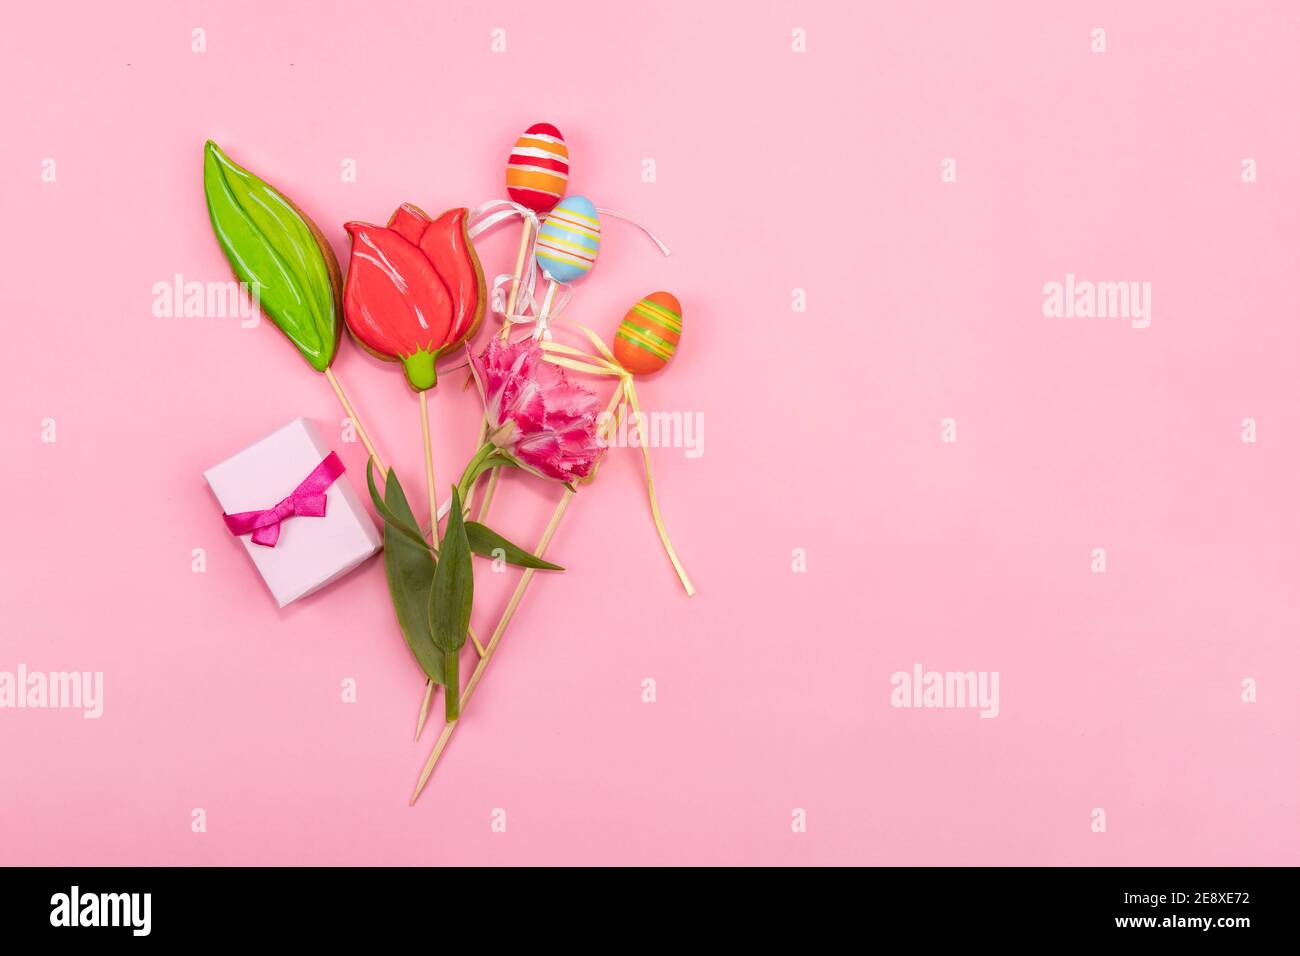 Concetto di biglietto di auguri di primavera. Su fondo rosa si trova un bouquet di tulipani, biscotti sotto forma di tulipano, uova di Pasqua e una piccola scatola con spezie. Foto Stock